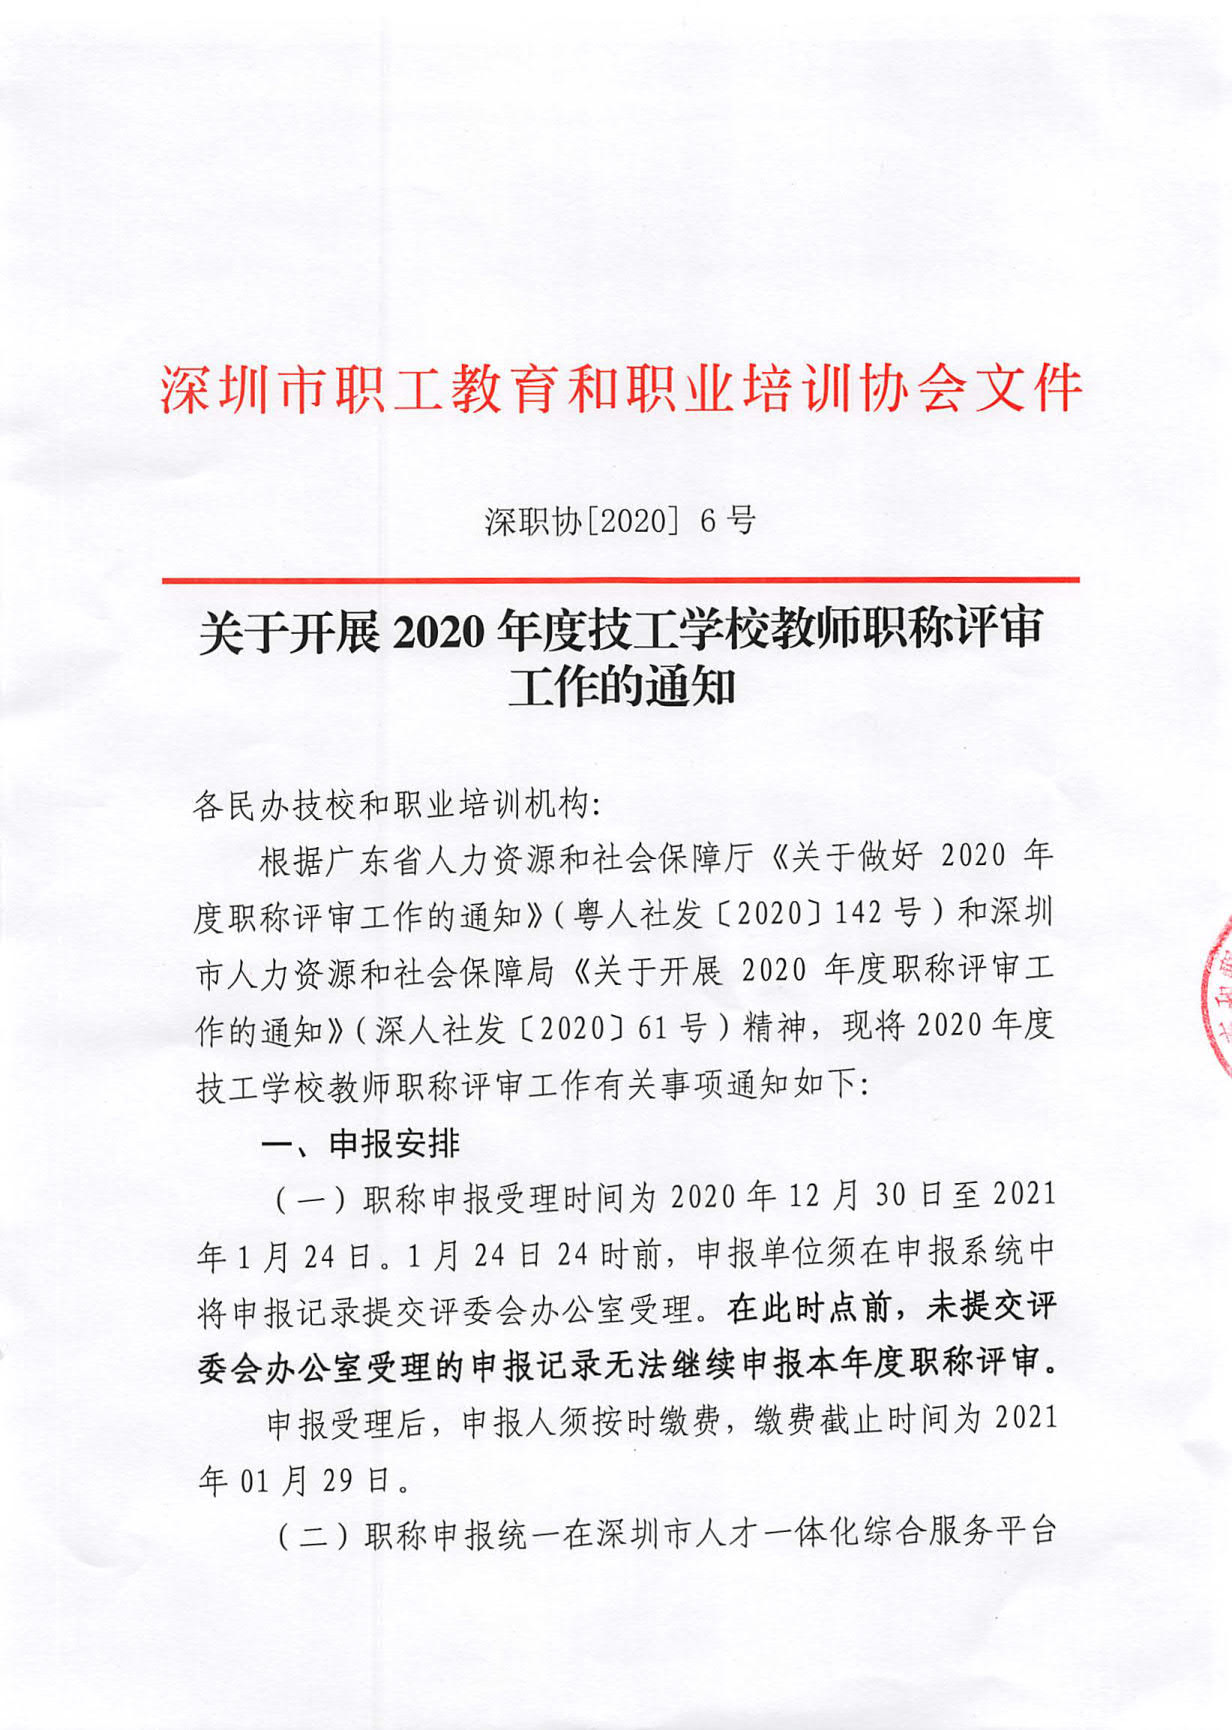 关于开展深圳市2020年度职称评审工作的通知_1.jpg